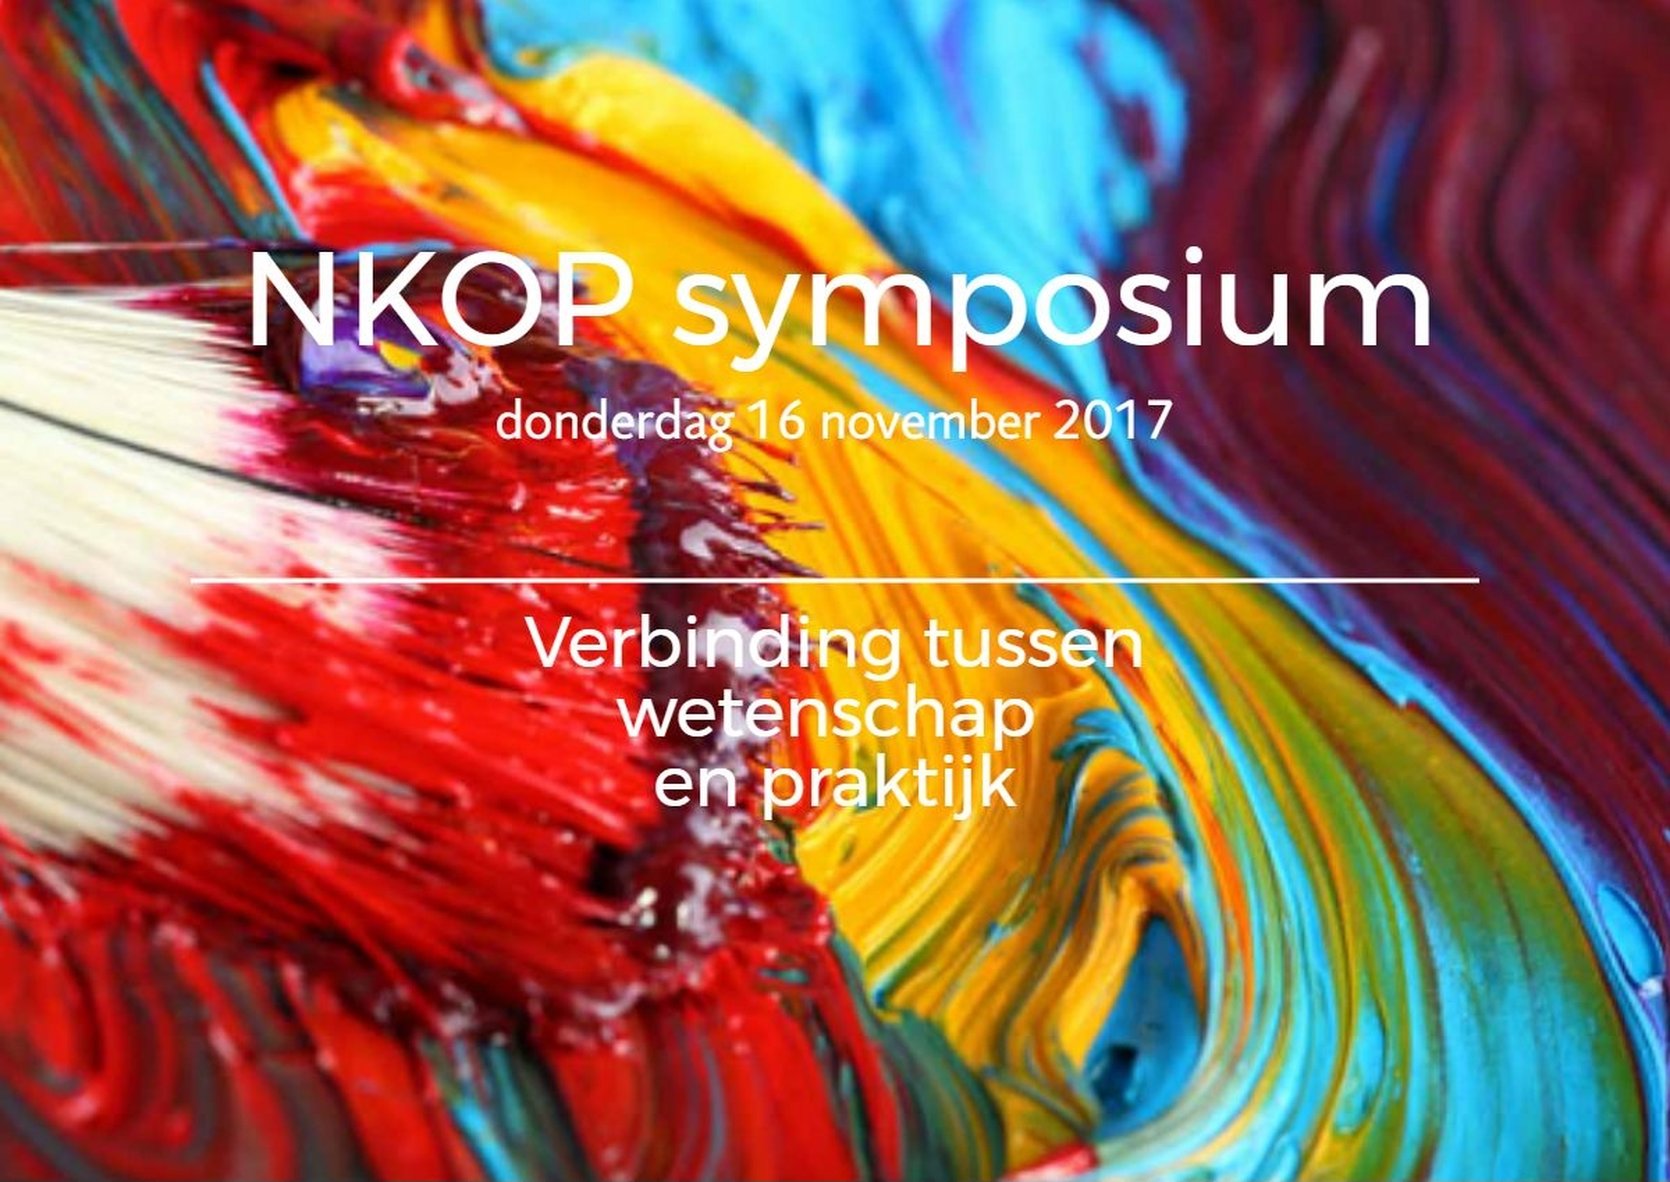 NKOP symposium 2017 - verbinding tussen wetenschap en praktijk